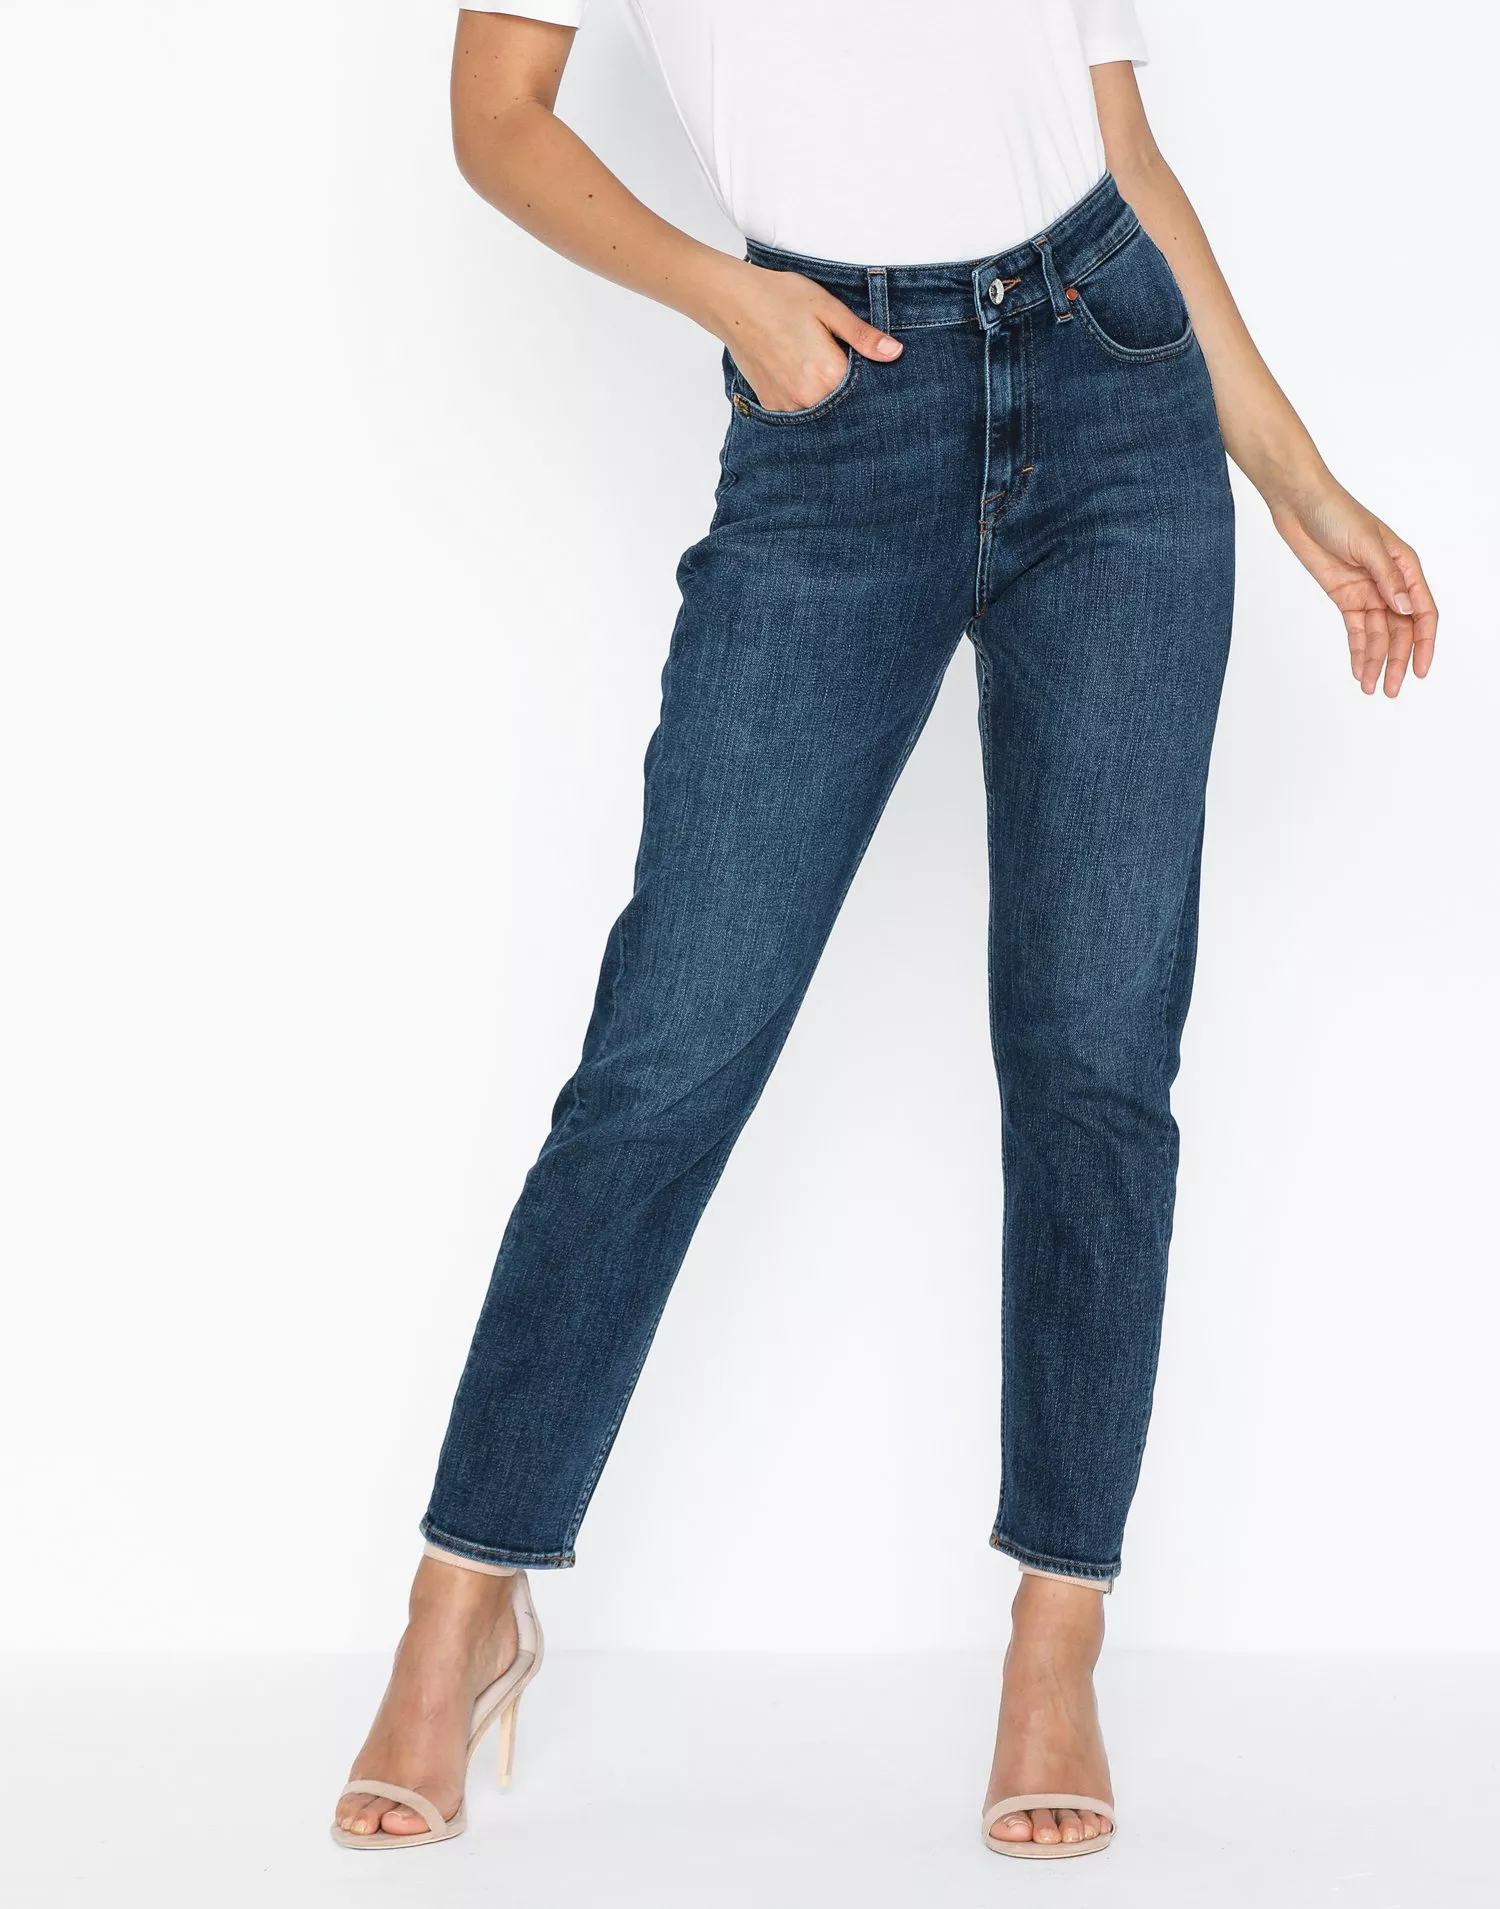 dukke Fordampe Bortset Buy Tiger Of Sweden Jeans Lea Jeans - Medium Blue | Nelly.com